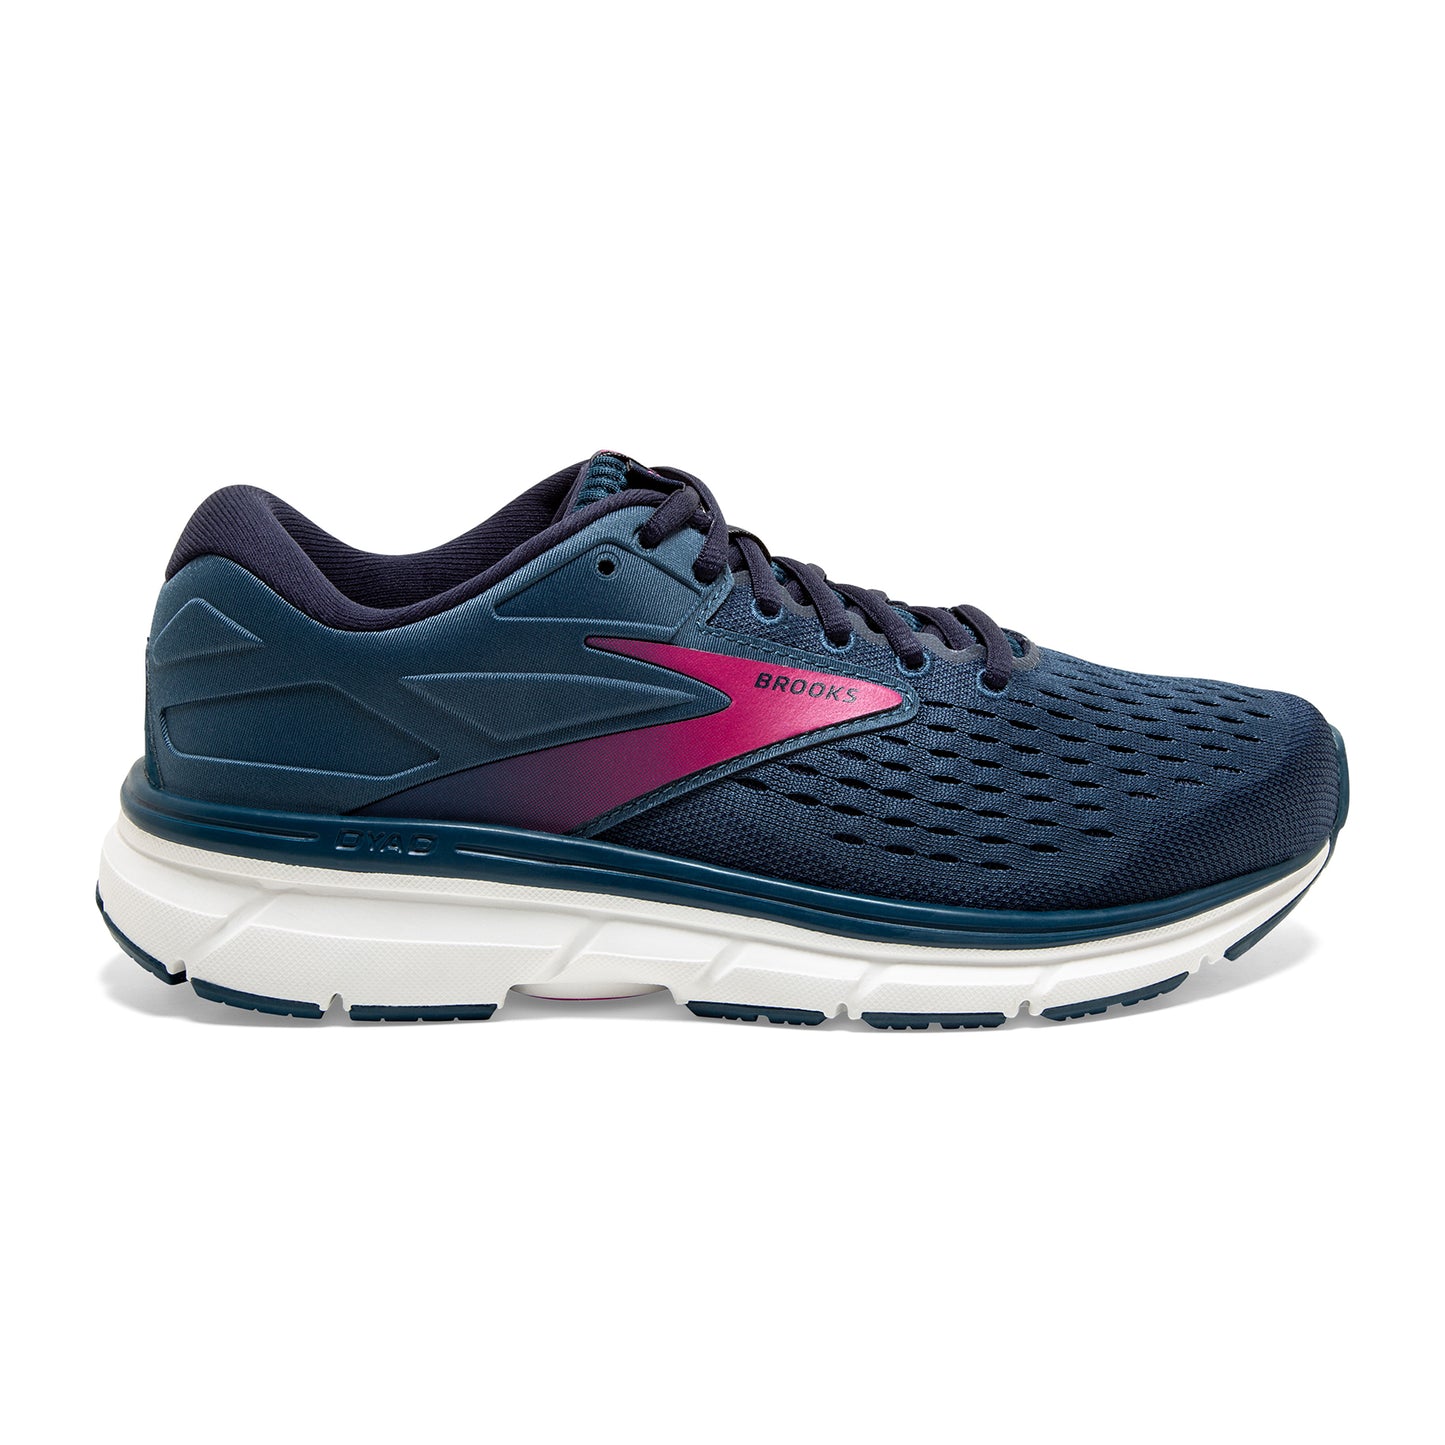 Women's Dyad 11 Running Shoe - Blue/Navy/Beetroot - Regular (B)